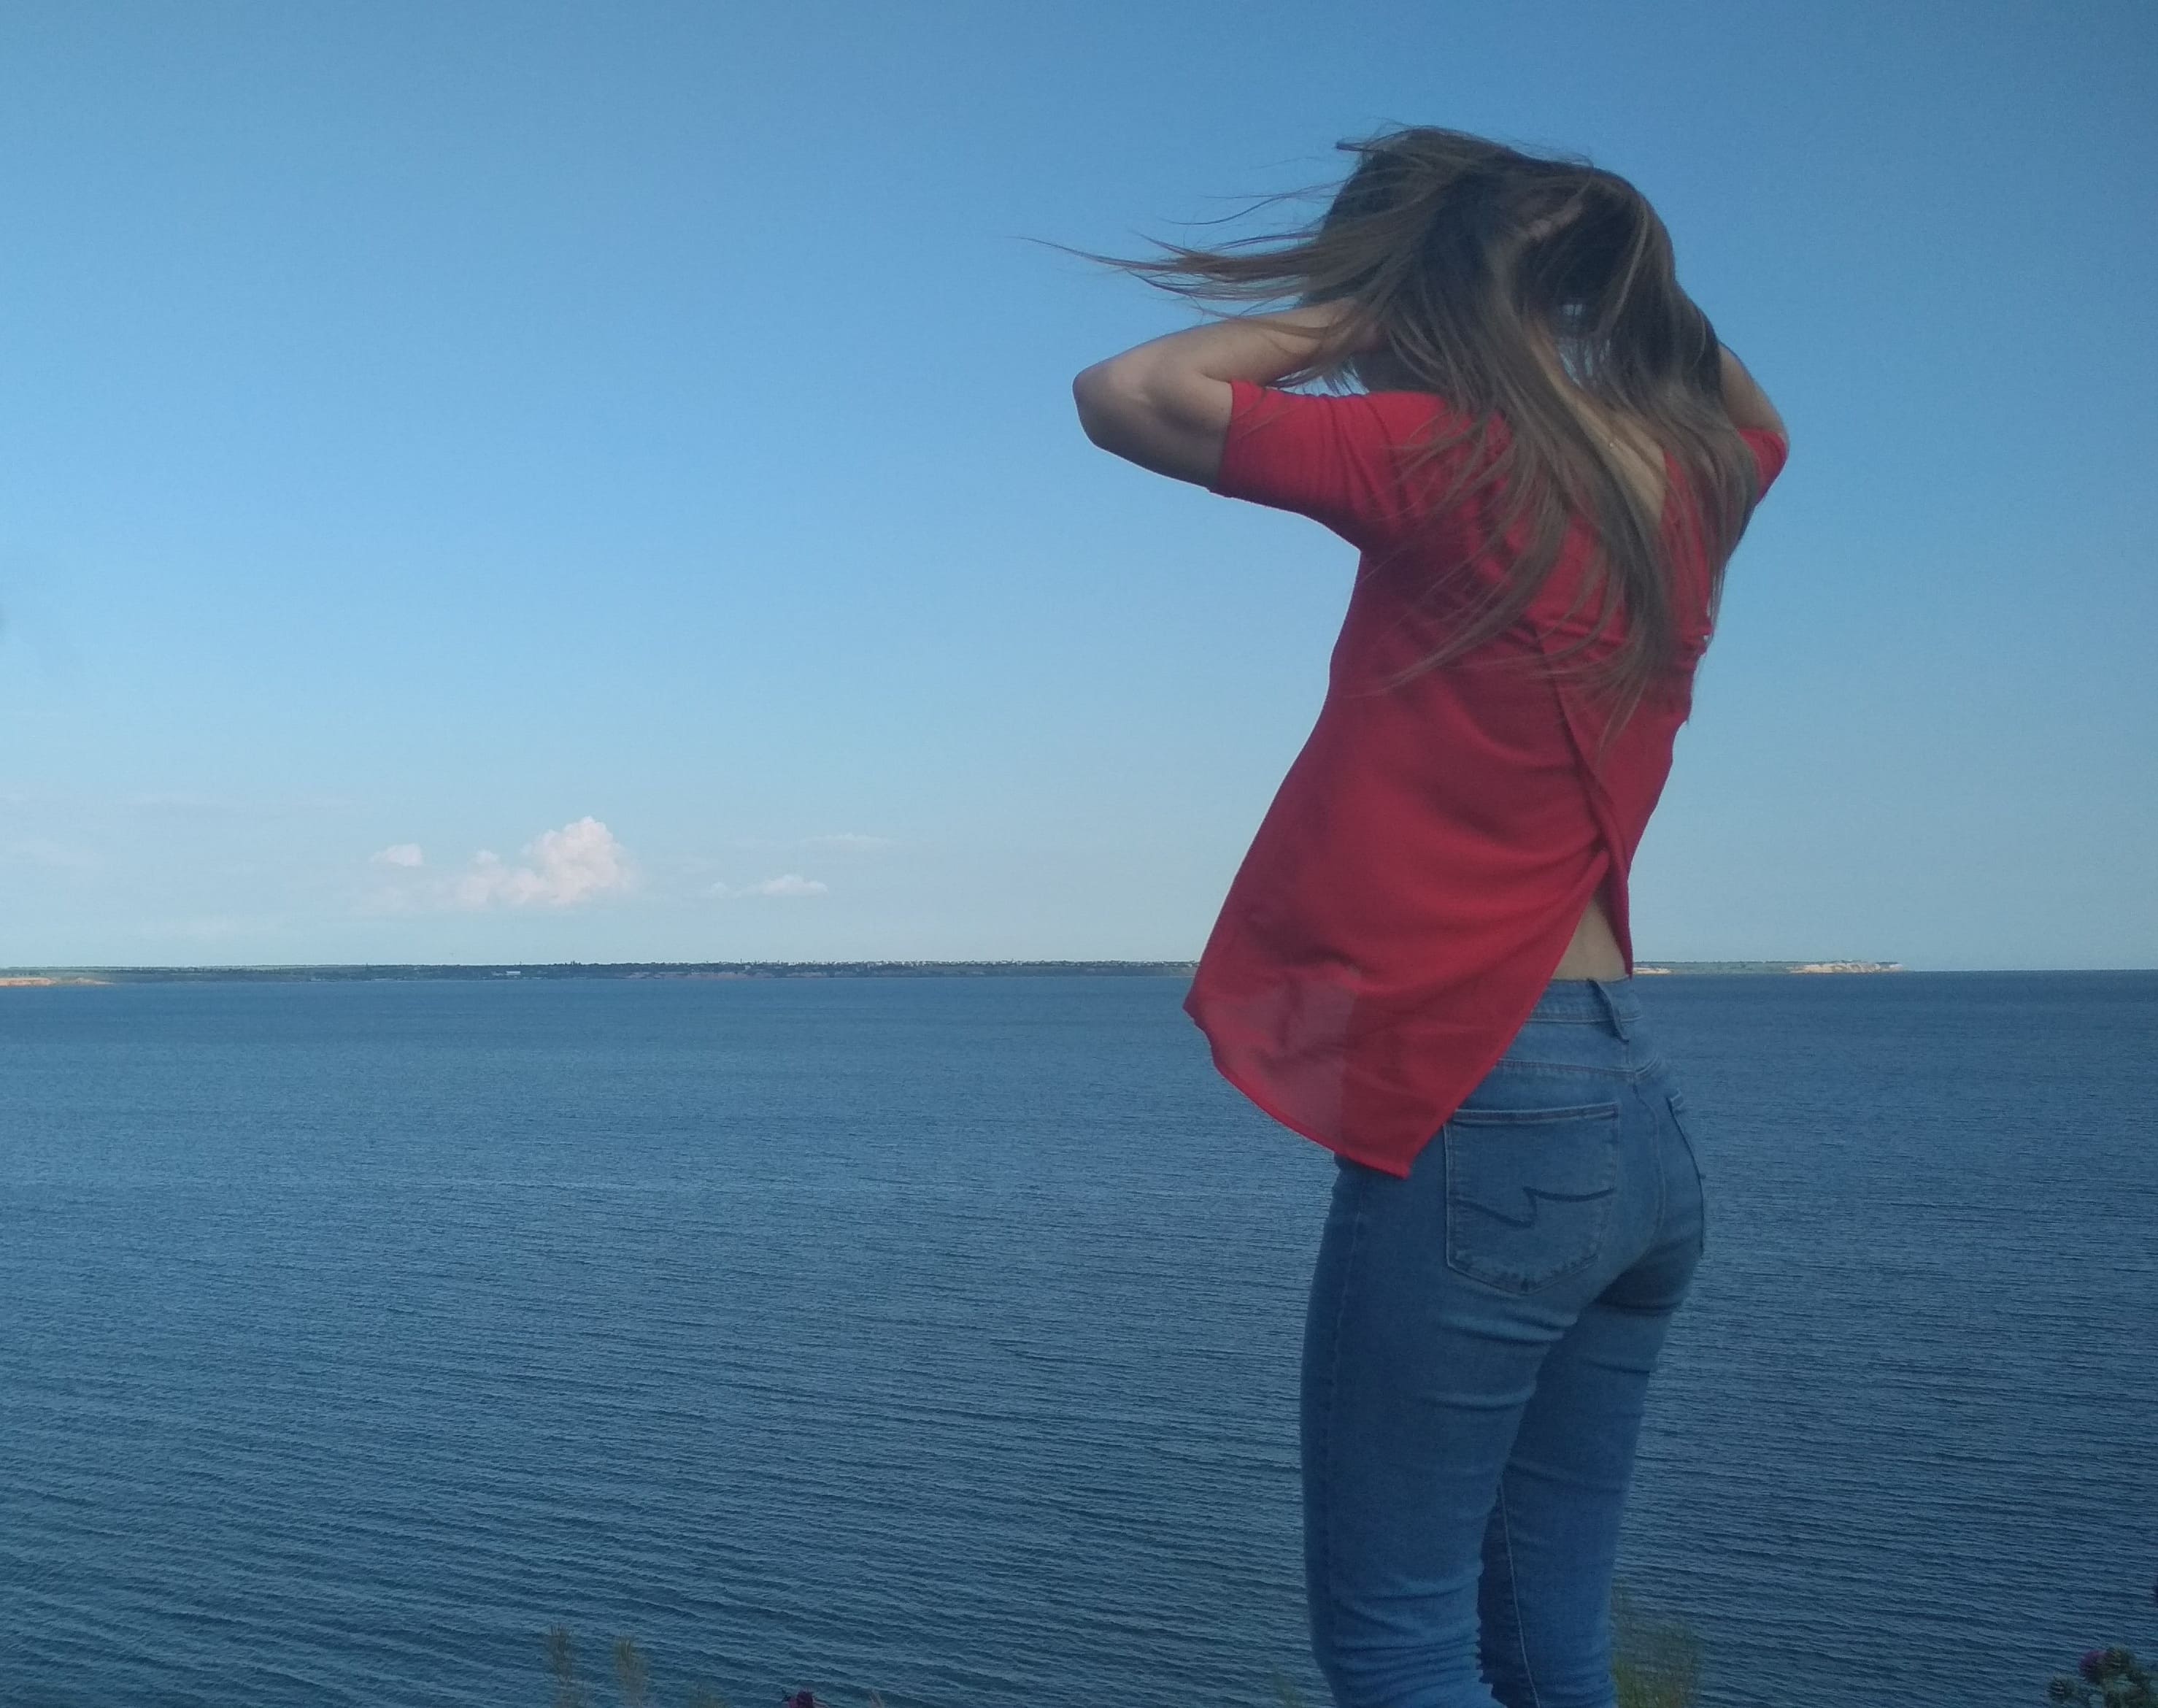 Girl Near Sea in Ukraine Photo preview image.